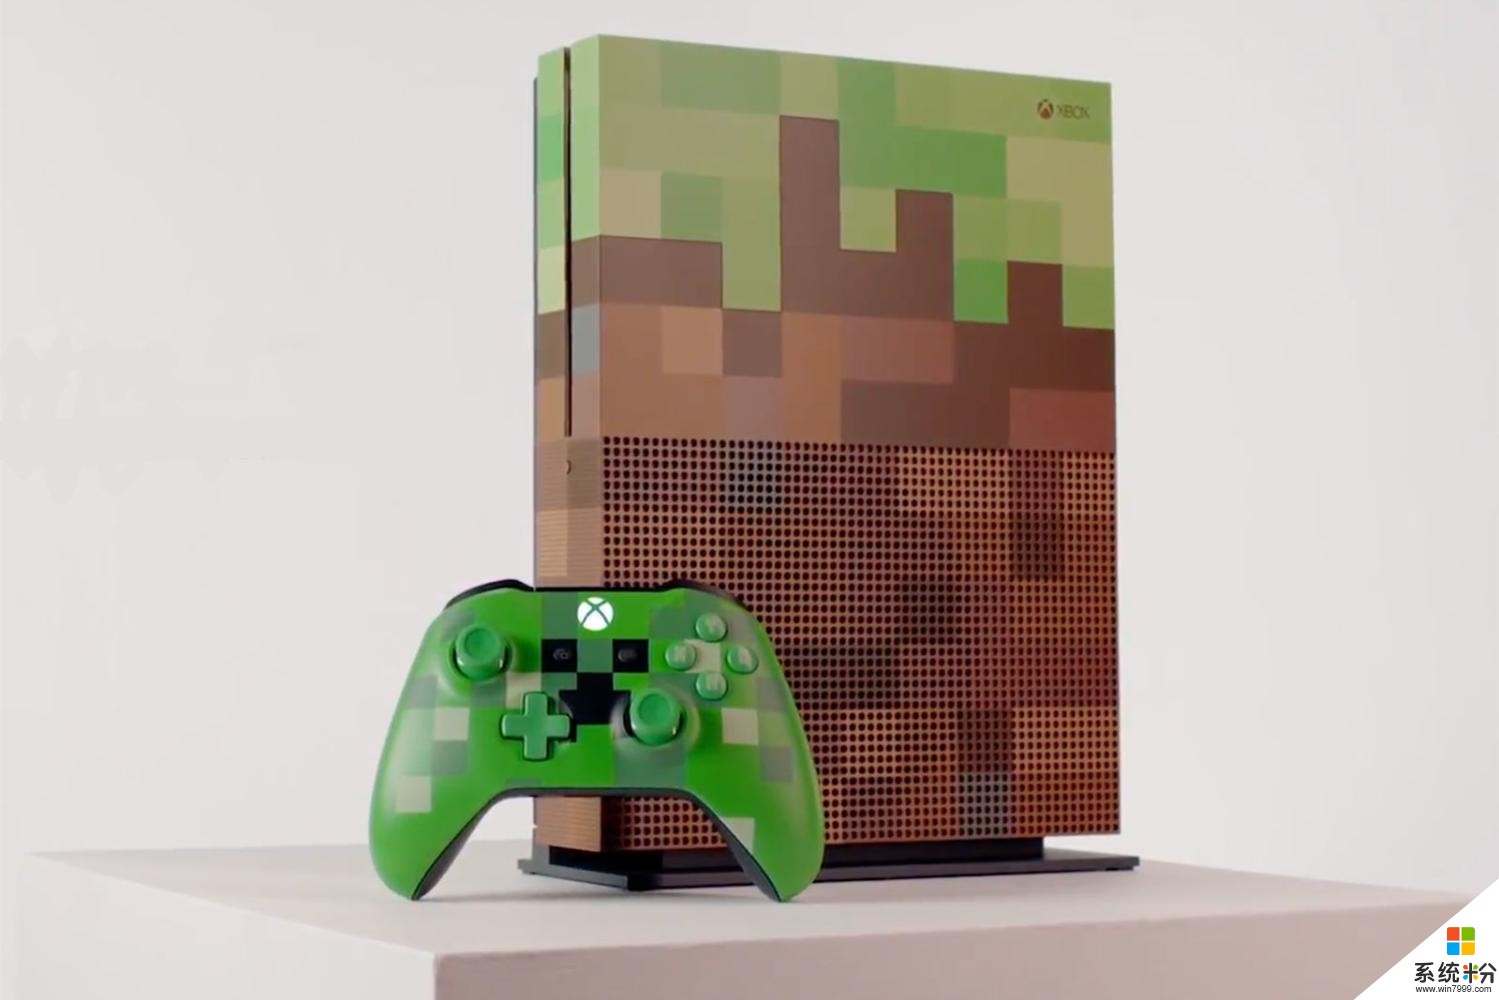 微软《Minecraft》像素风格款 Xbox One S 主机登场(1)